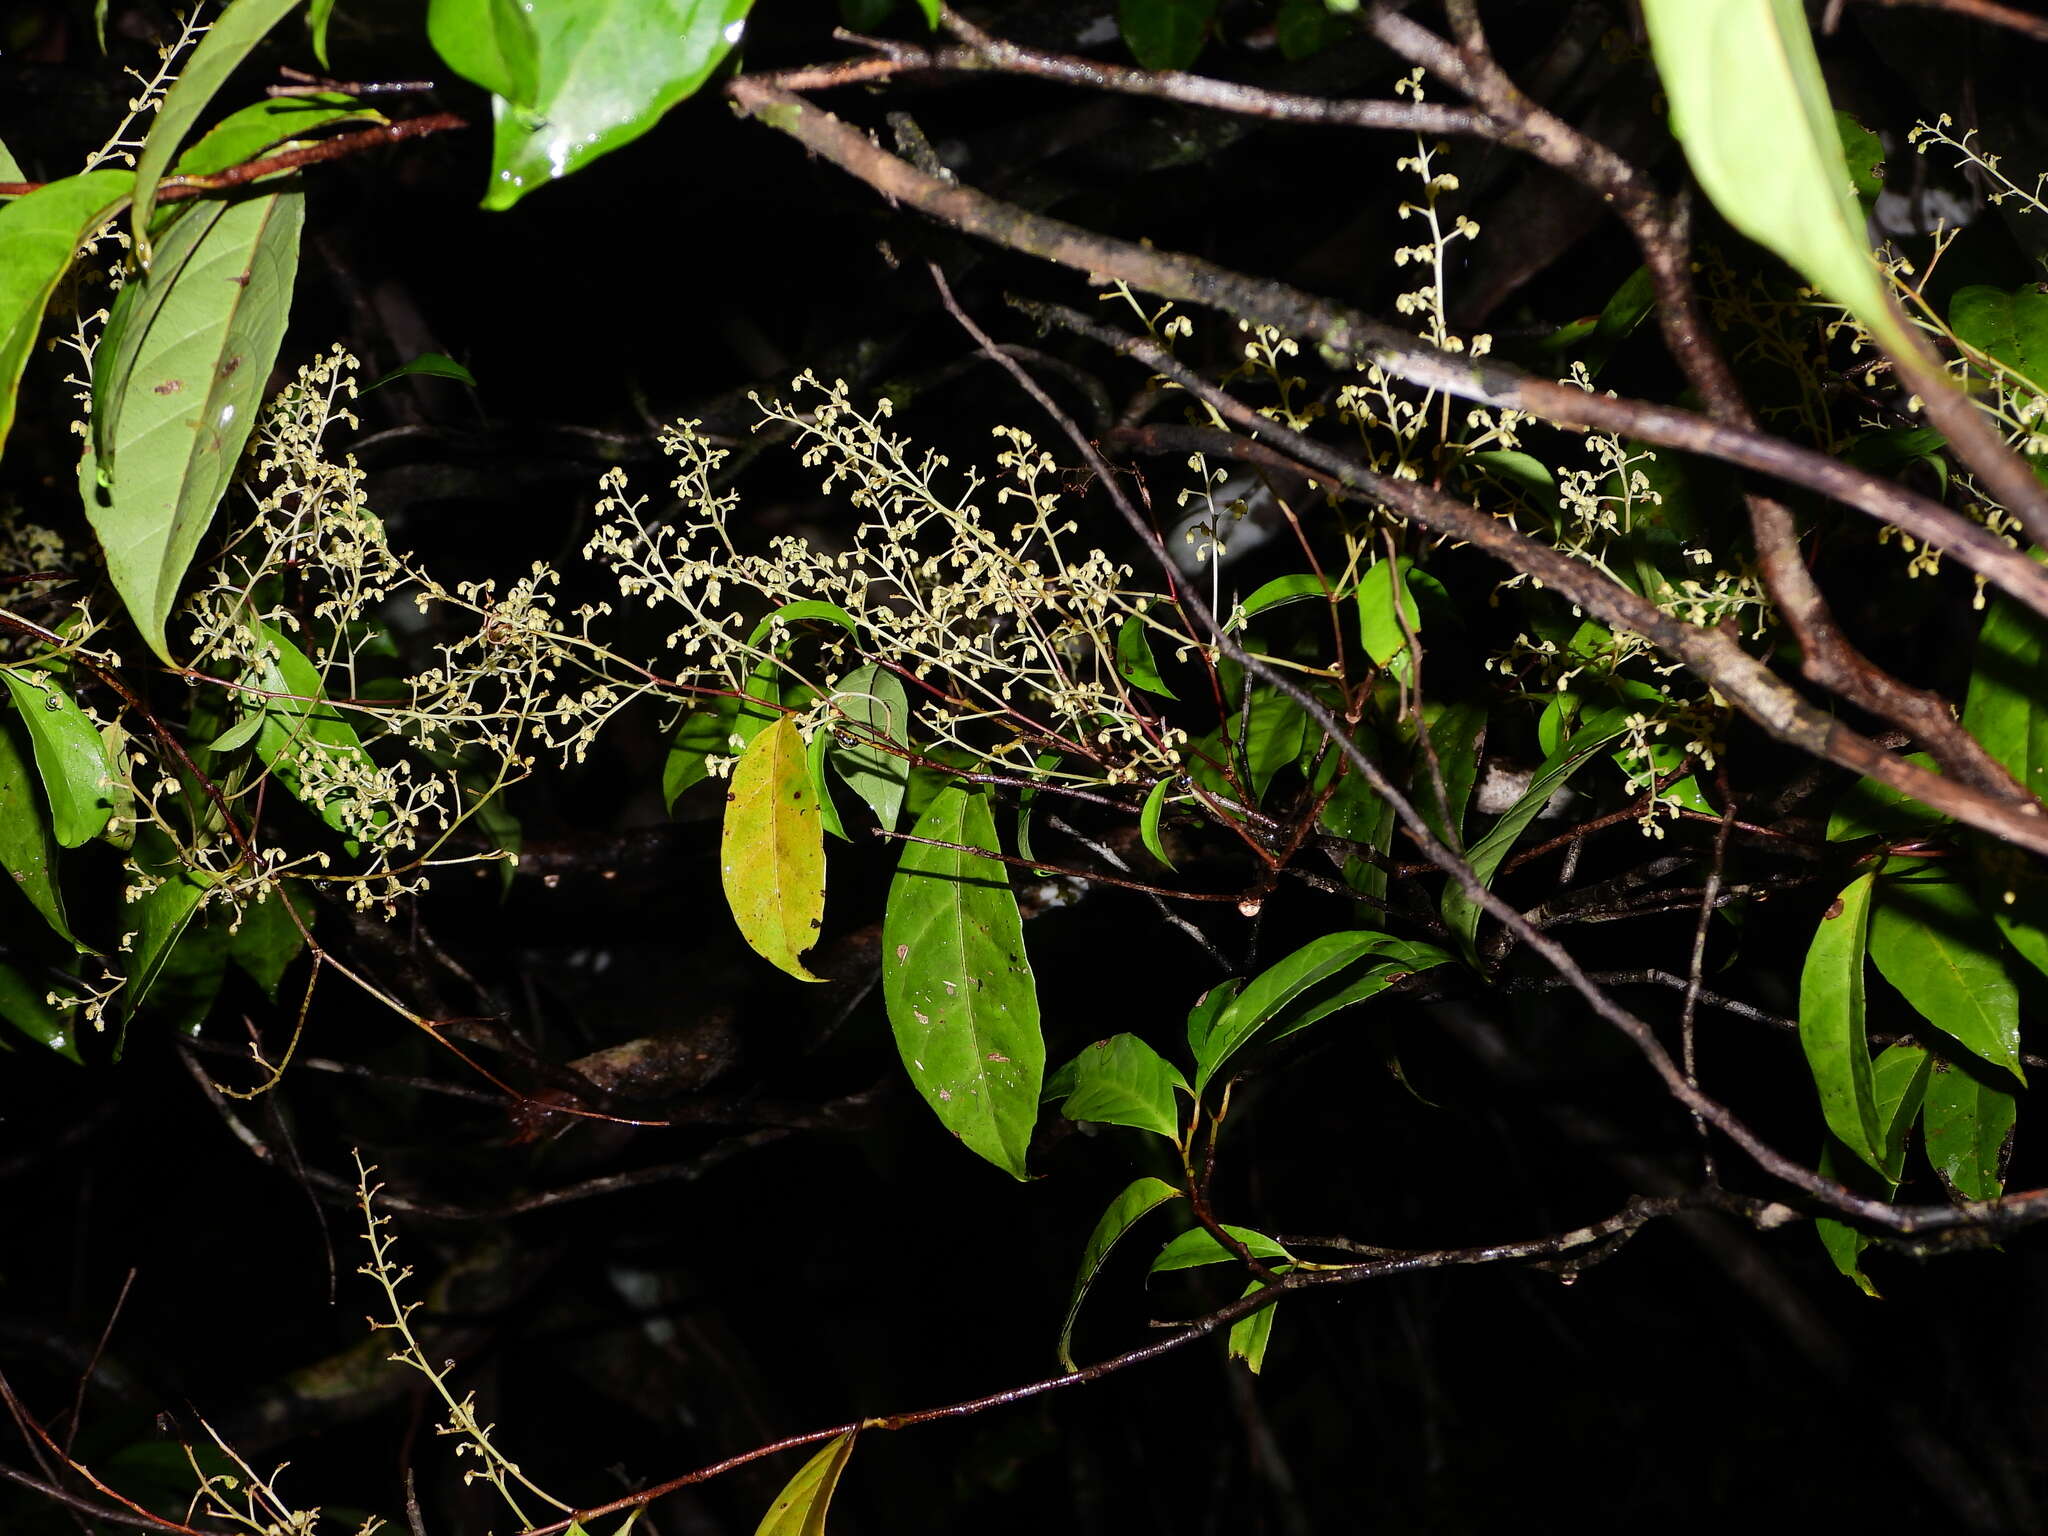 Sivun Rinorea paniculata (C. Martius) Kuntze kuva